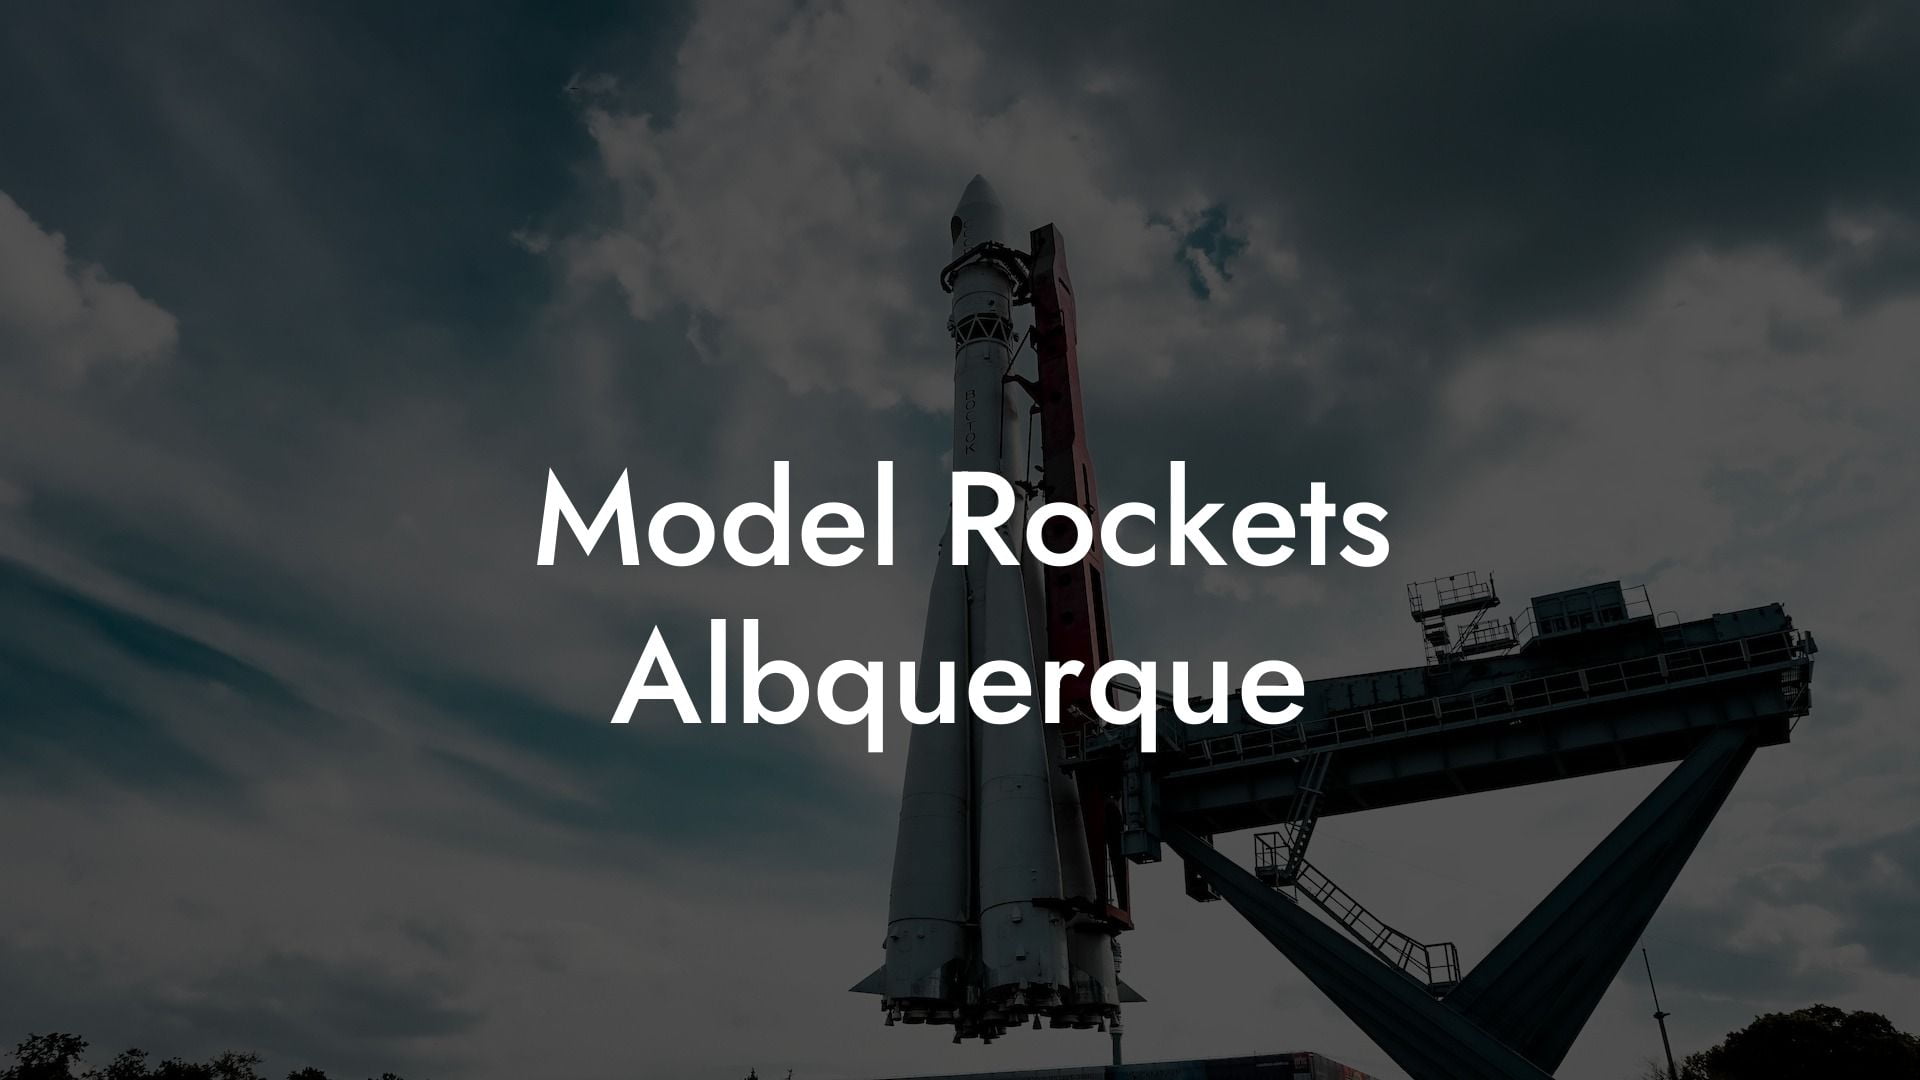 Model Rockets Albquerque